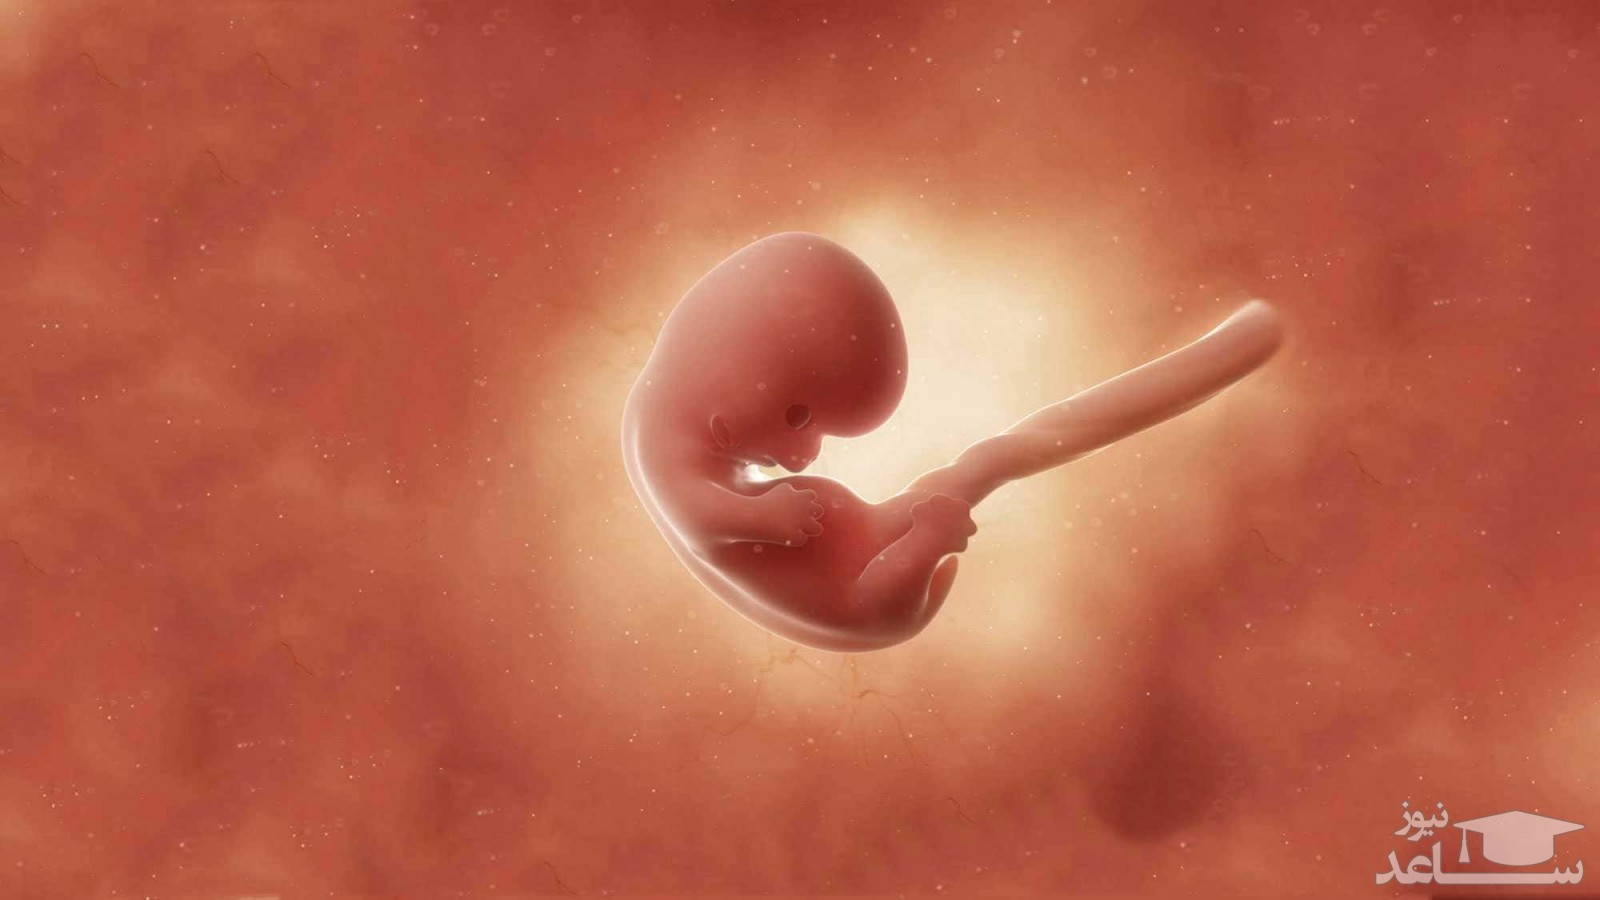 آشنایی با مراحل شکل گیری و تکامل جنین